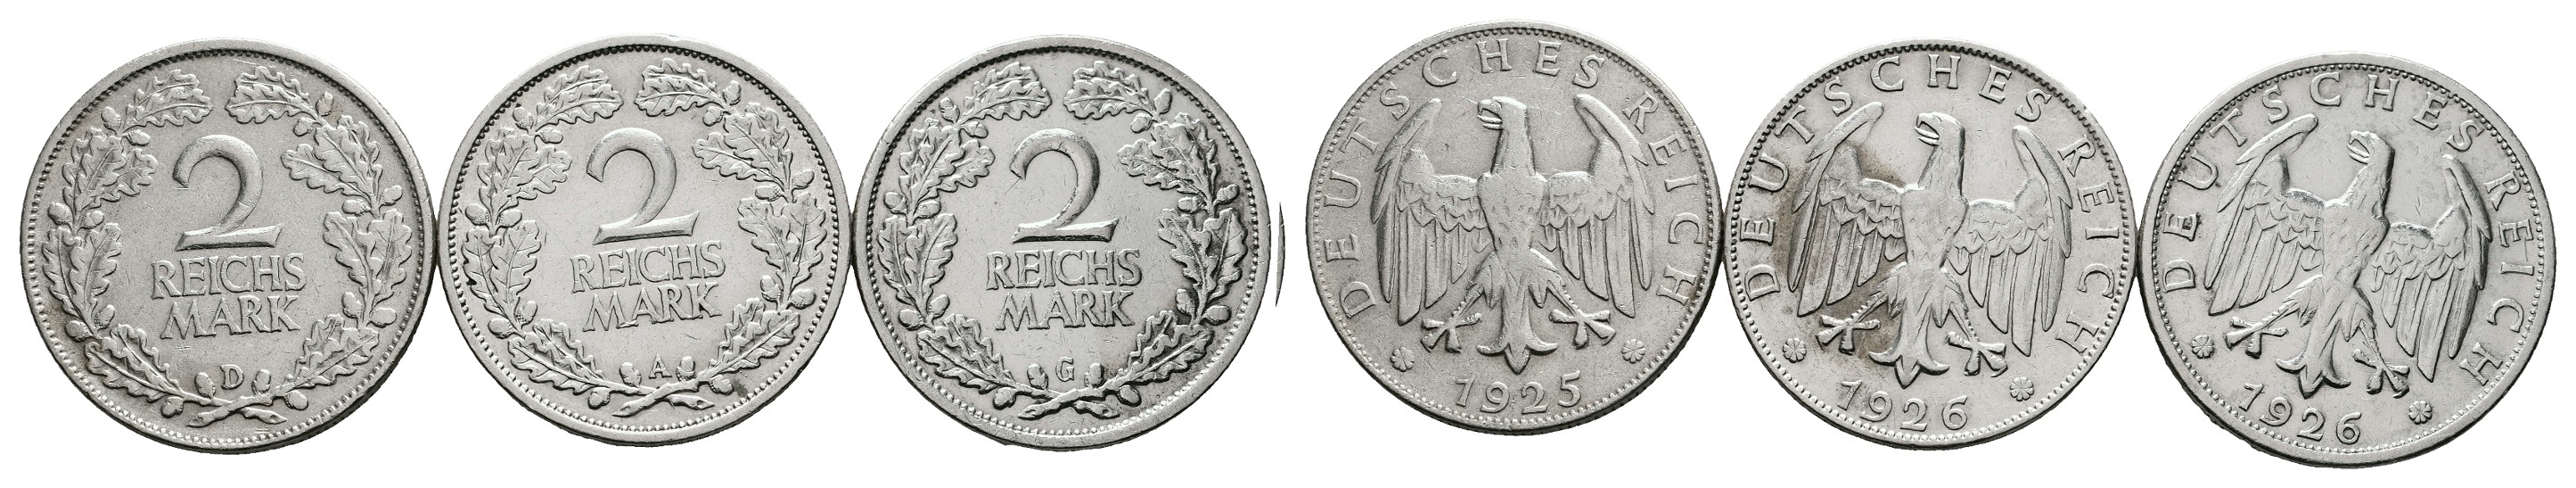  MGS Schweiz 2 Franken 1960 Feingewicht: 8,35g   